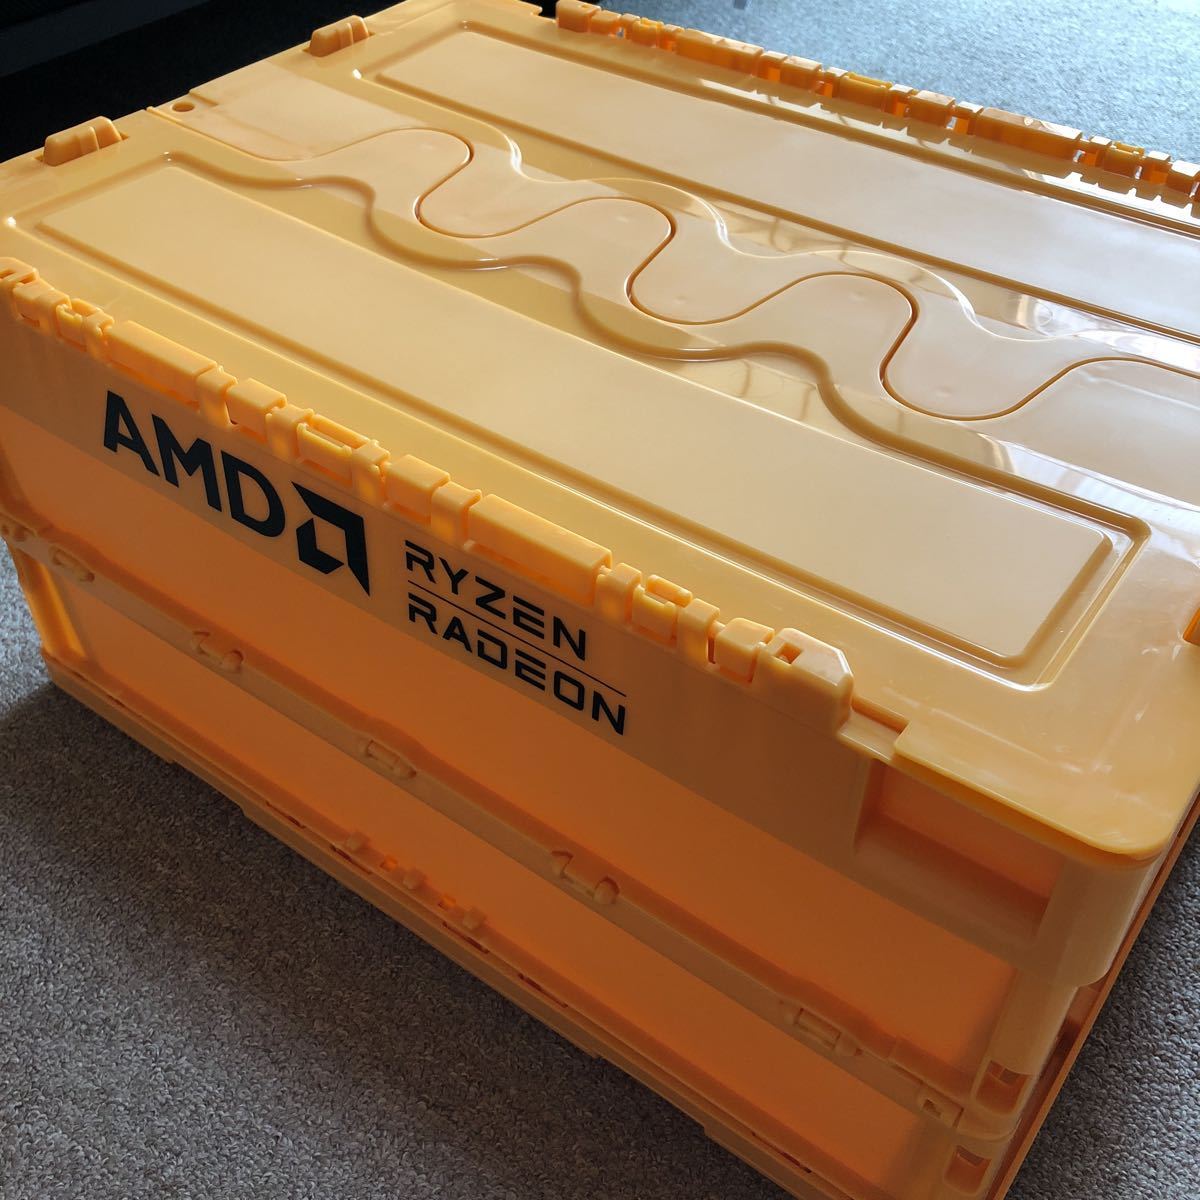 【未使用品】AMD RYZEN RADEON コンテナボックス 収納 工具箱 コンパクト_画像1